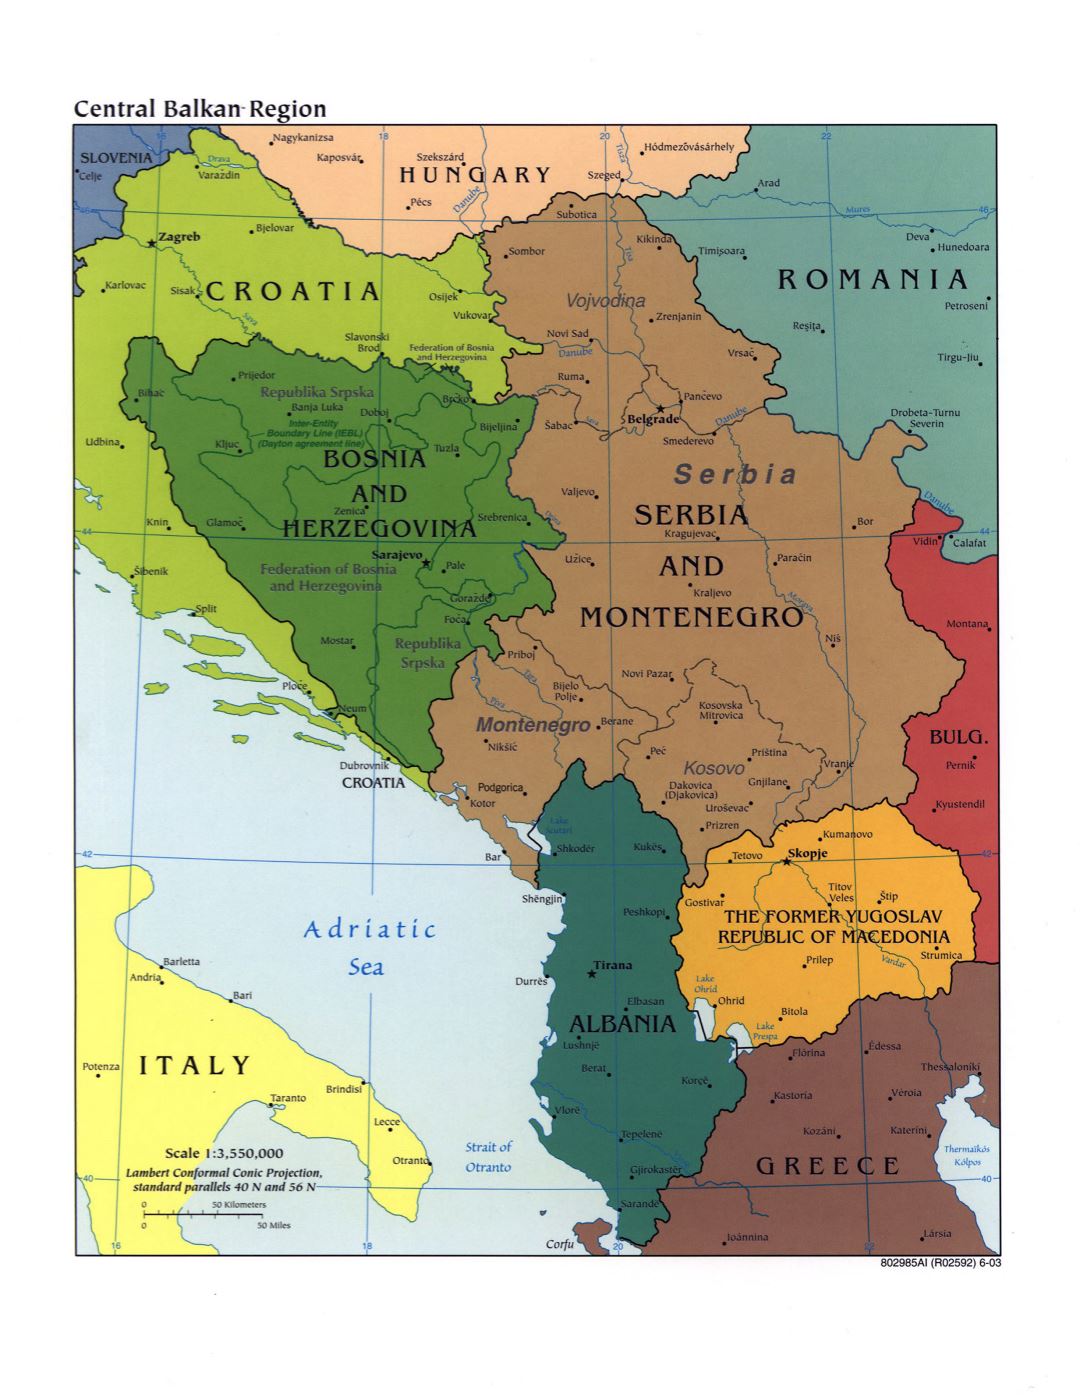 Mapa político grande de la Región Central de los Balcanes con marcas de capitales, grandes ciudades y nombres de los estados - 2003